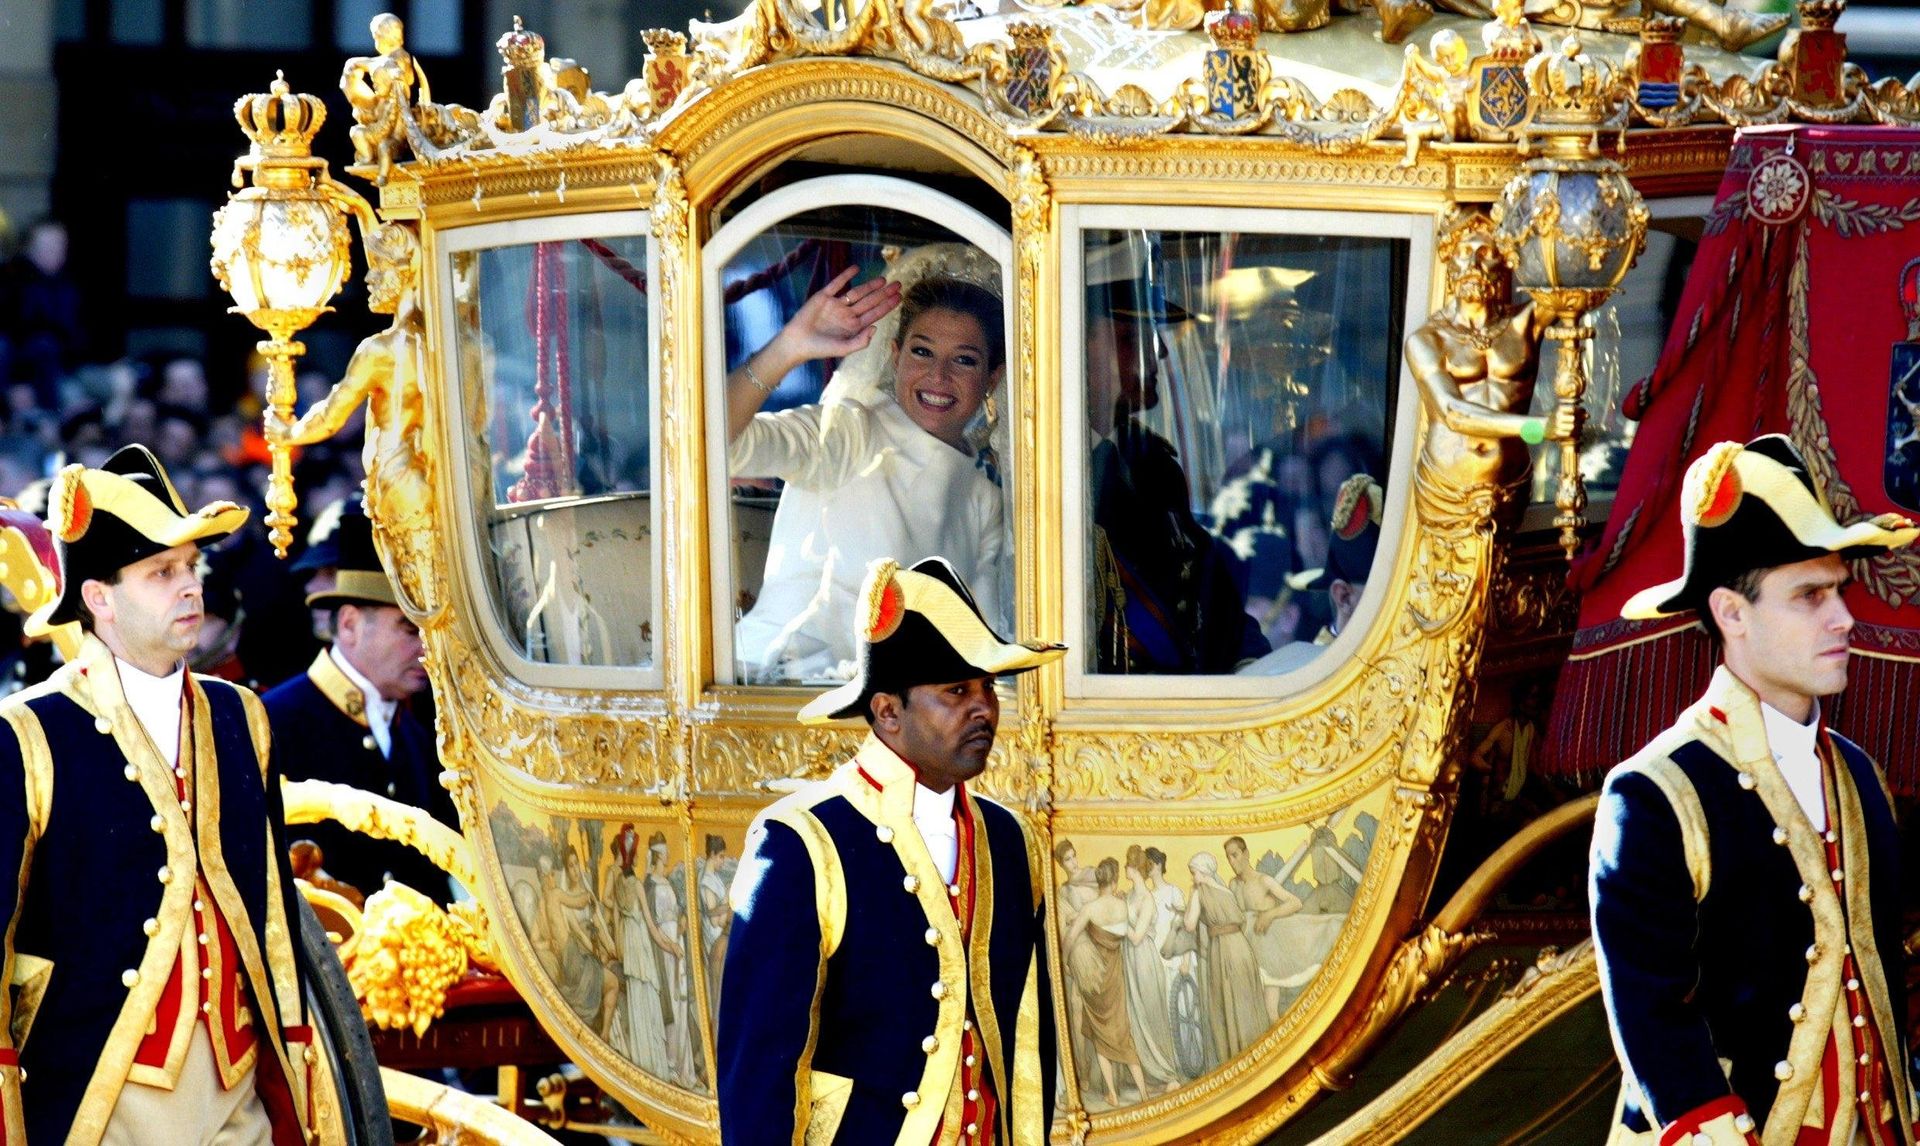 De Prins van Oranje en de nieuwe prinses Máxima rijden in de Gouden Koets na hun